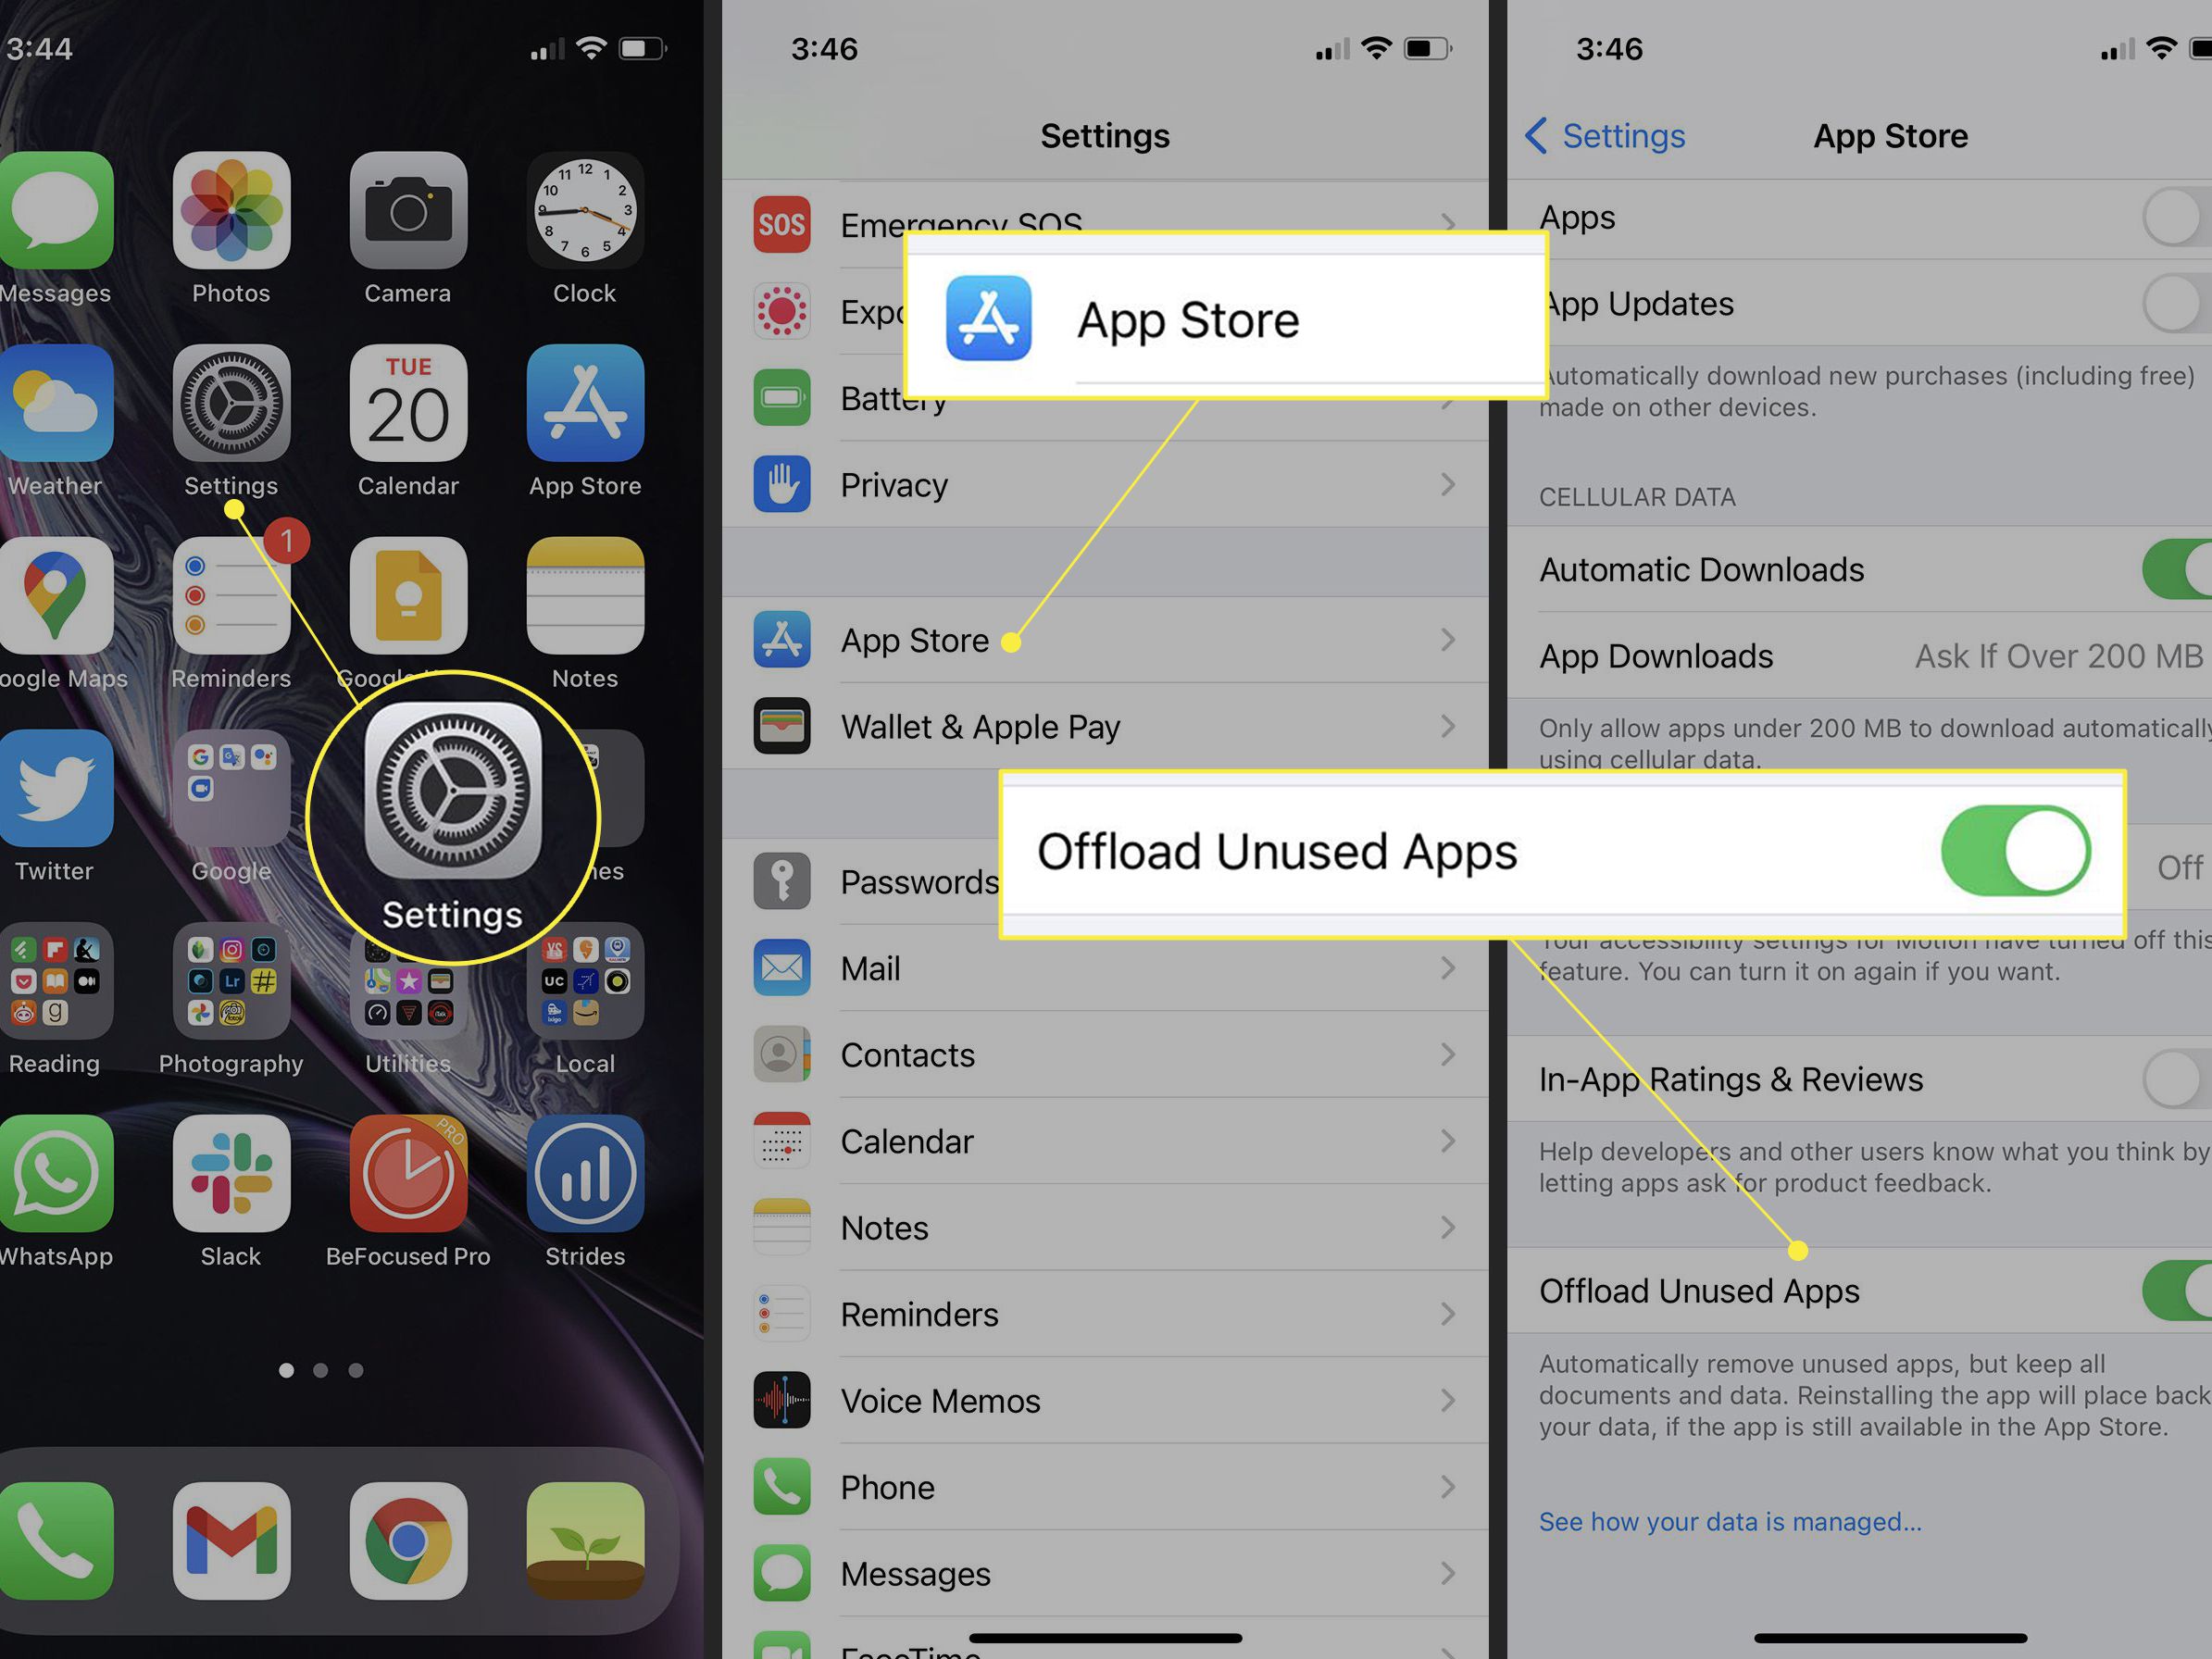 خالی کردن حافظه آیفون Offload Unused Apps در iOS 11